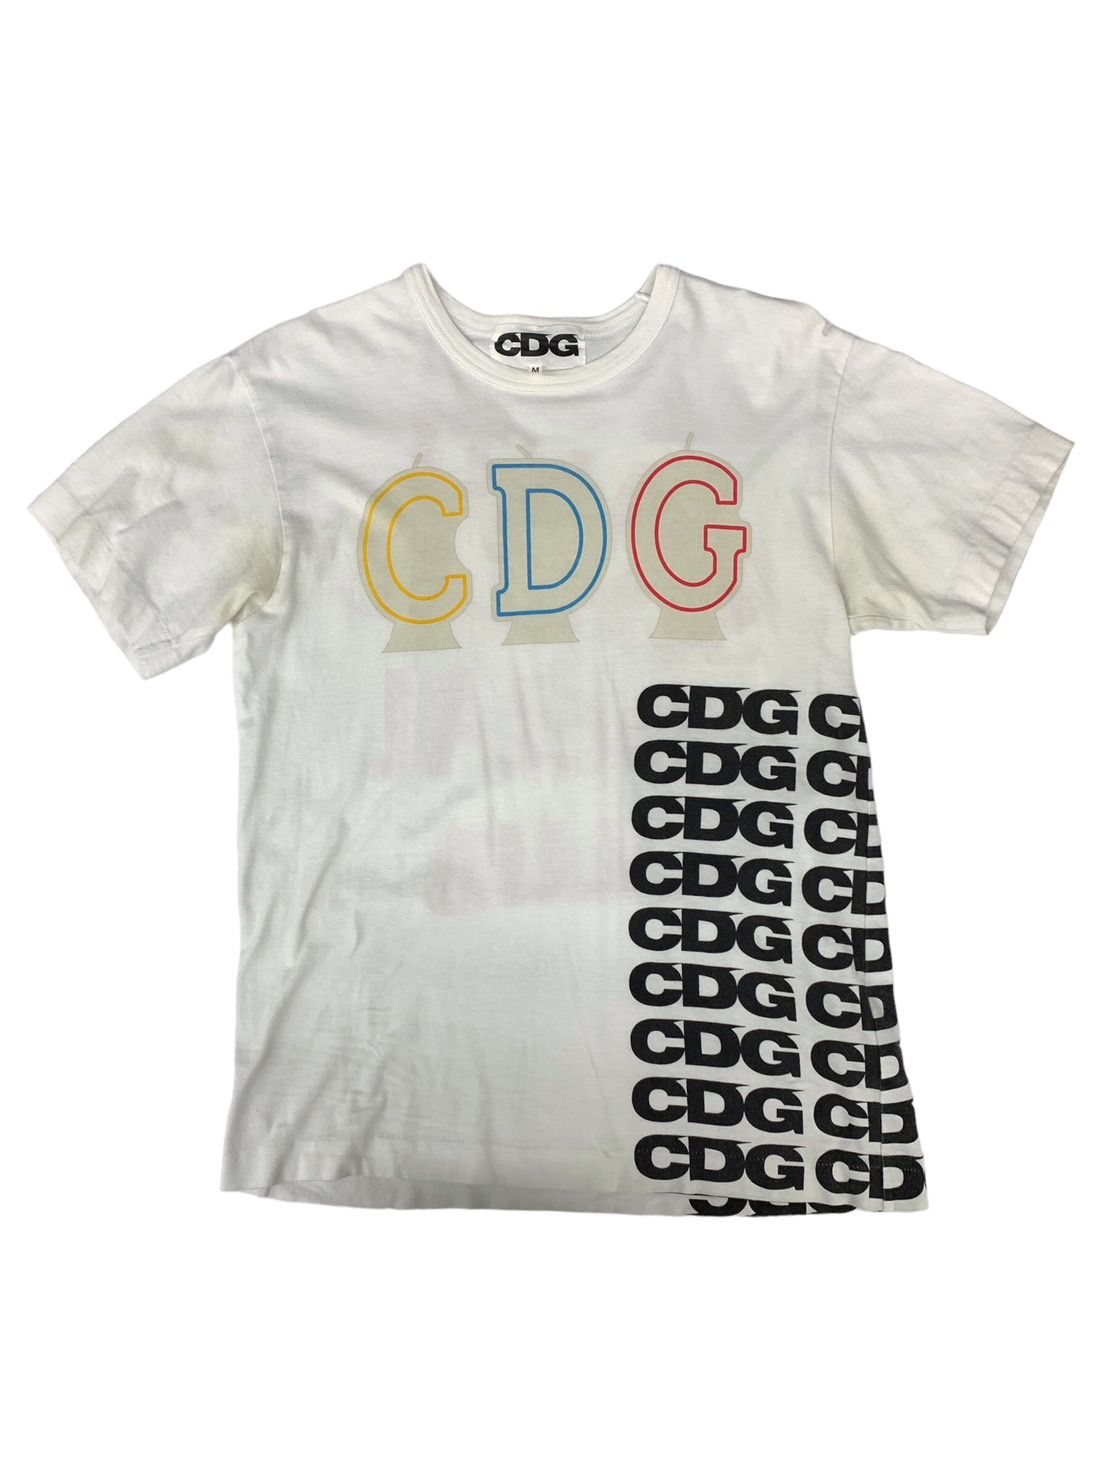 CDG (シーディージー) コムデギャルソン×ASSC プリントTシャツ SB-T005 ...